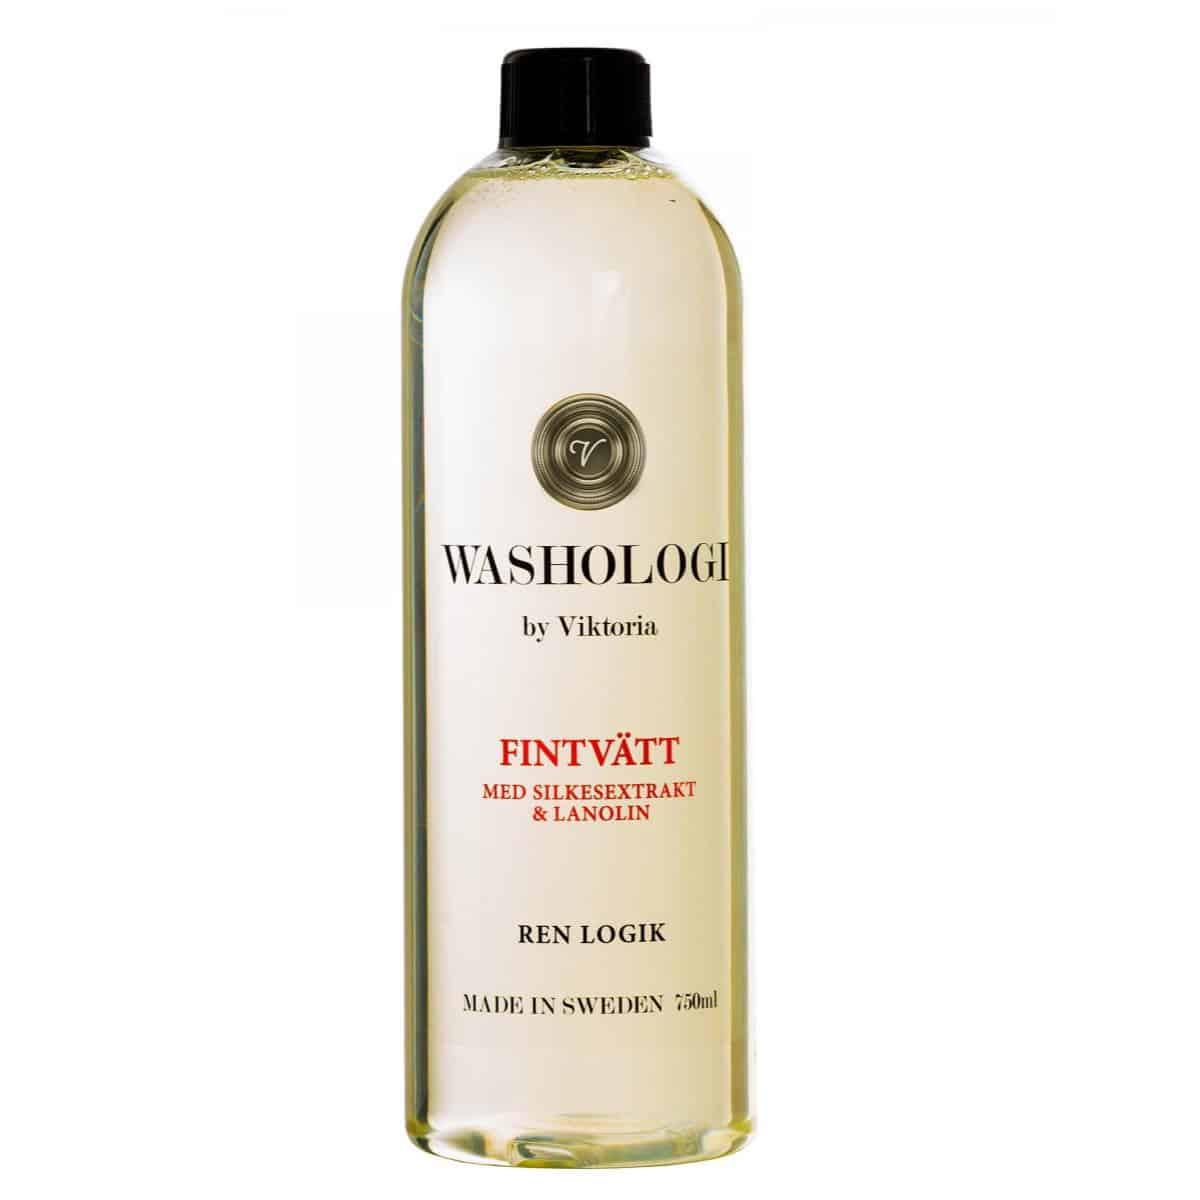 Omslagsbild för “Washologi Fintvätt - med silkesextrakt & lanolin”